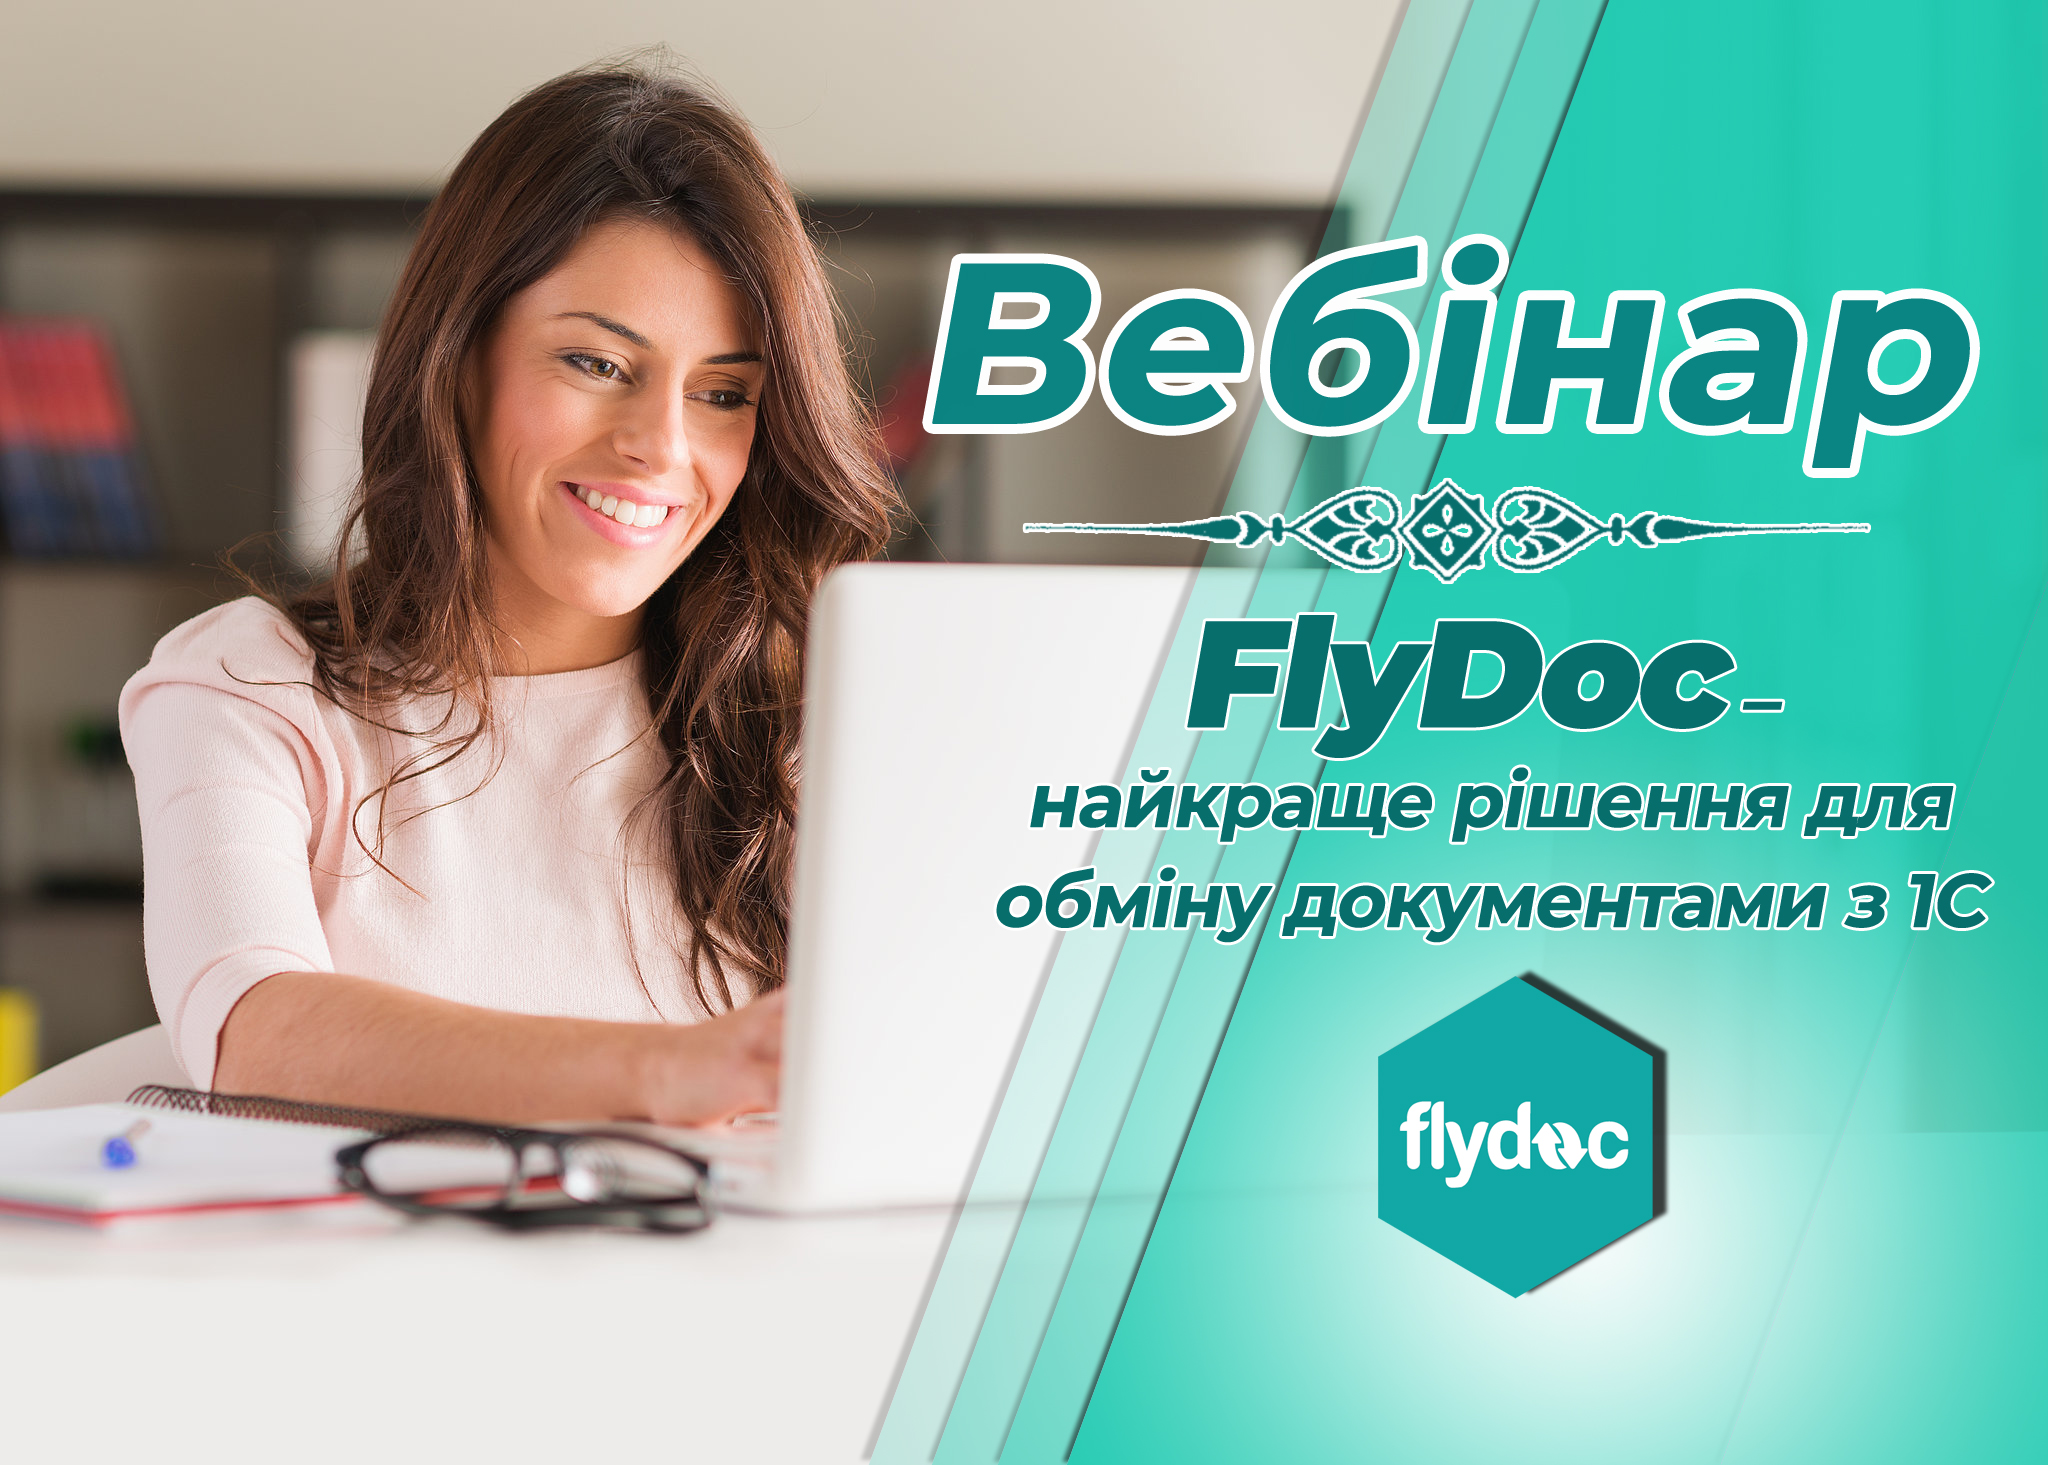 Вебінар на тему: "FlyDoc – найкраще рішення для обміну документами з 1С"